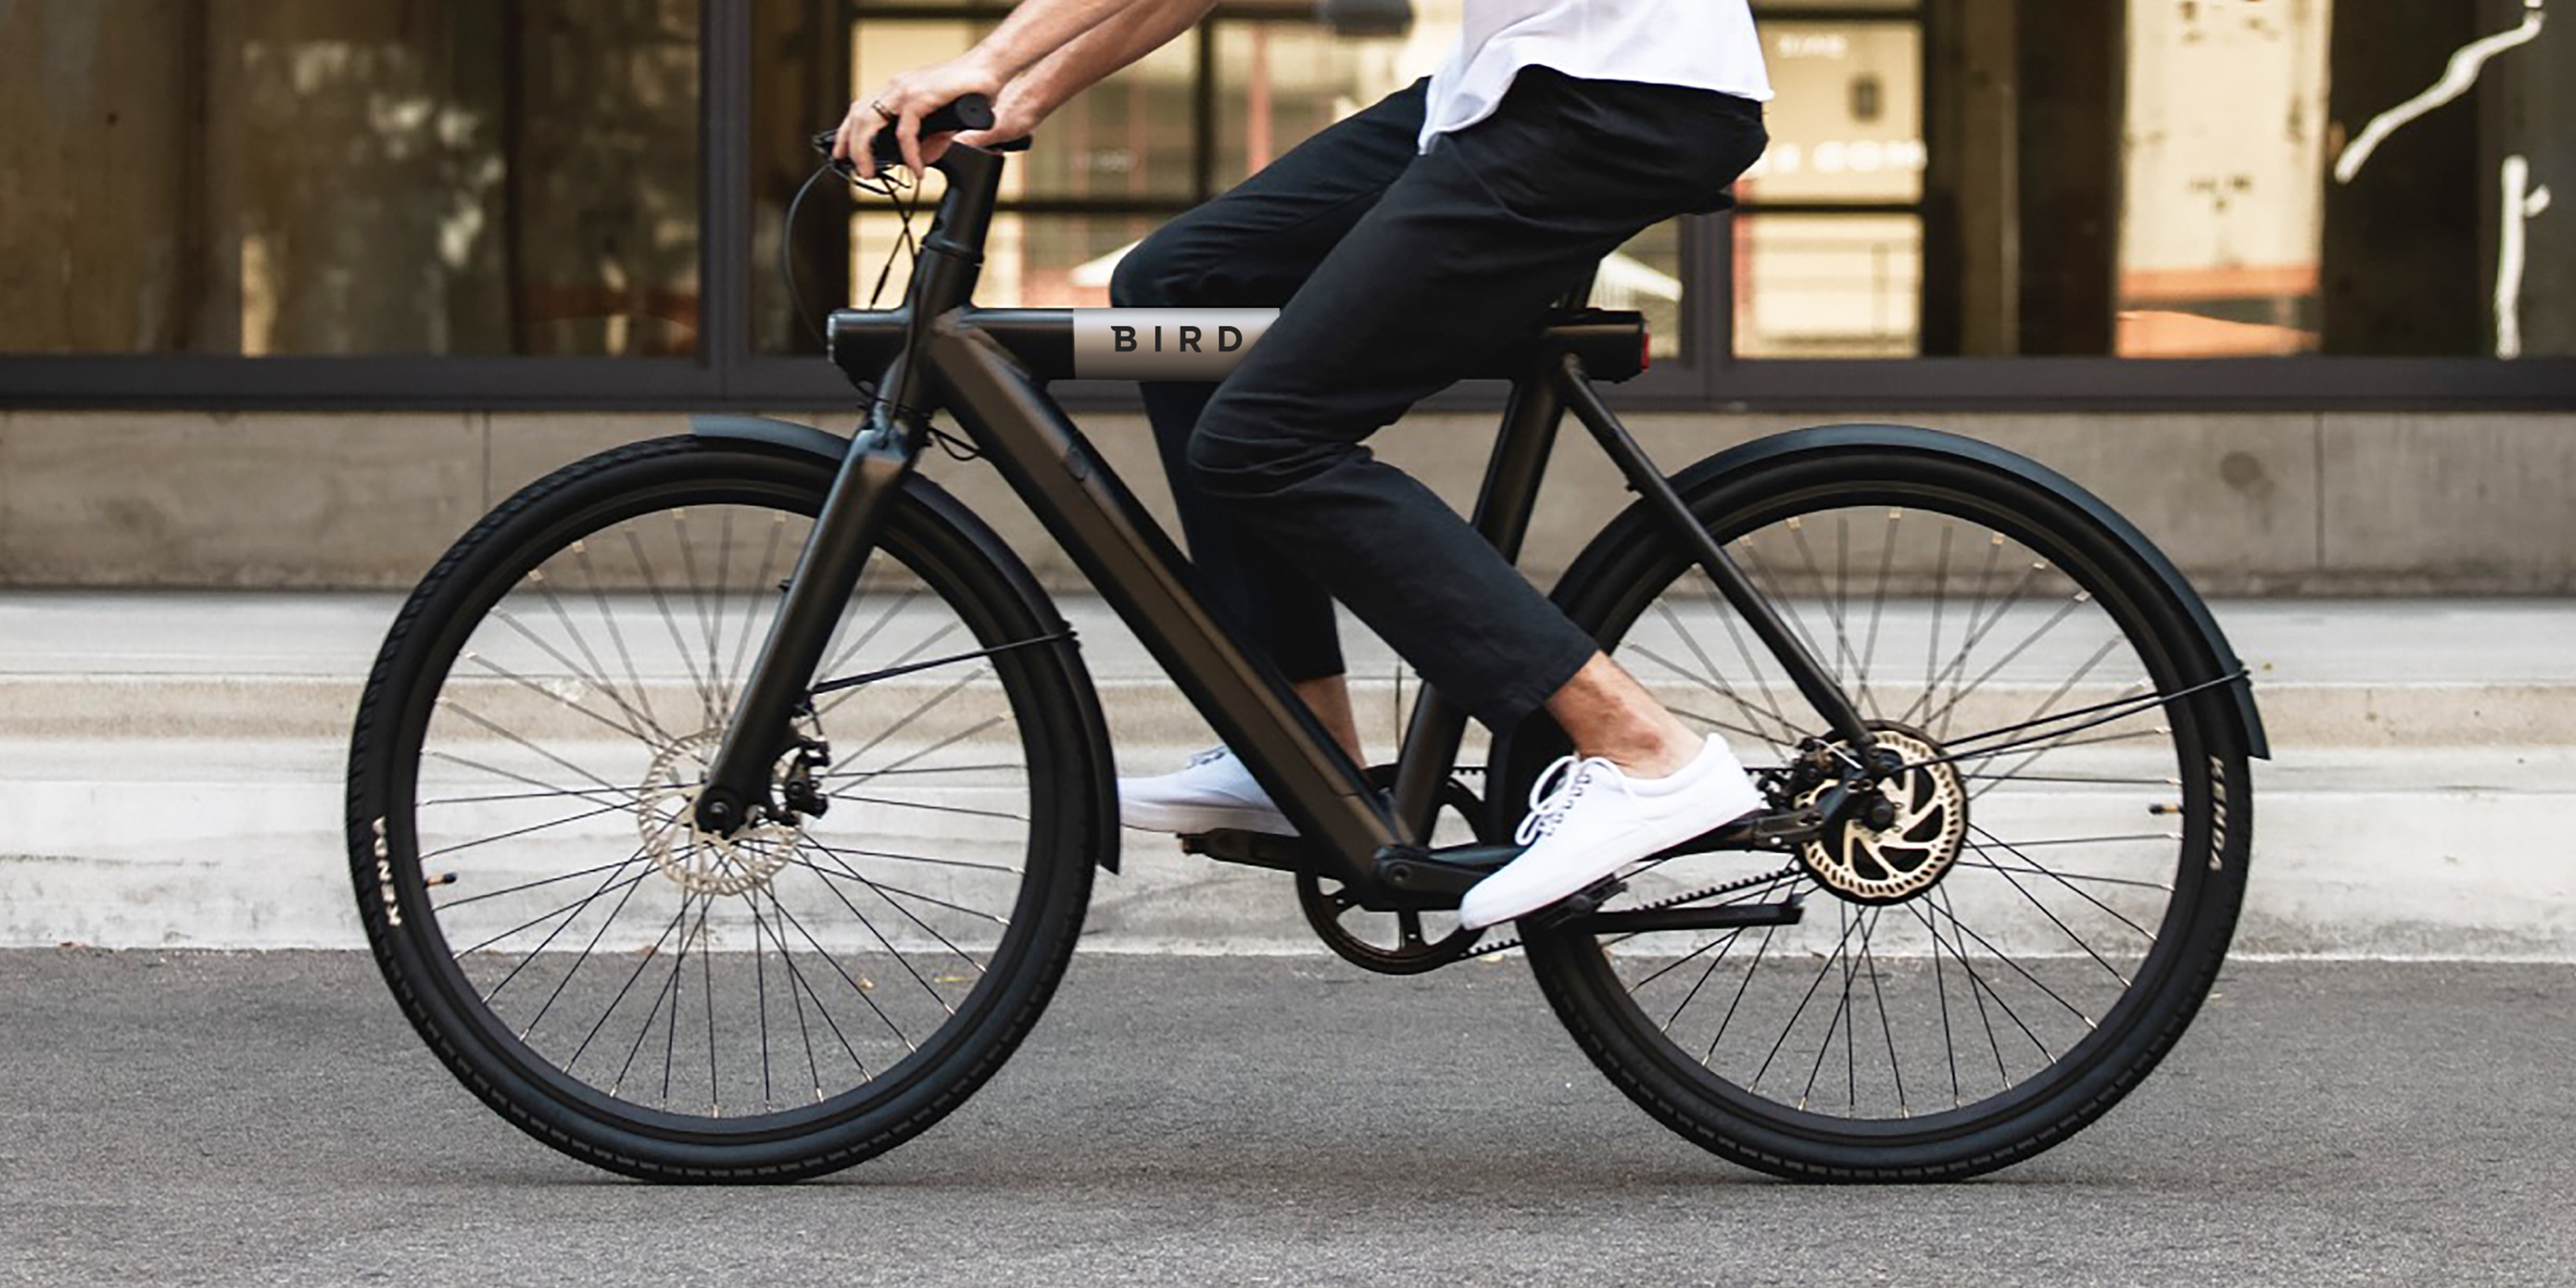 Reusachtig Aftrekken Alfabet Bird Bike review: is de e-bike het waard? | Voltes - Electric Mobility